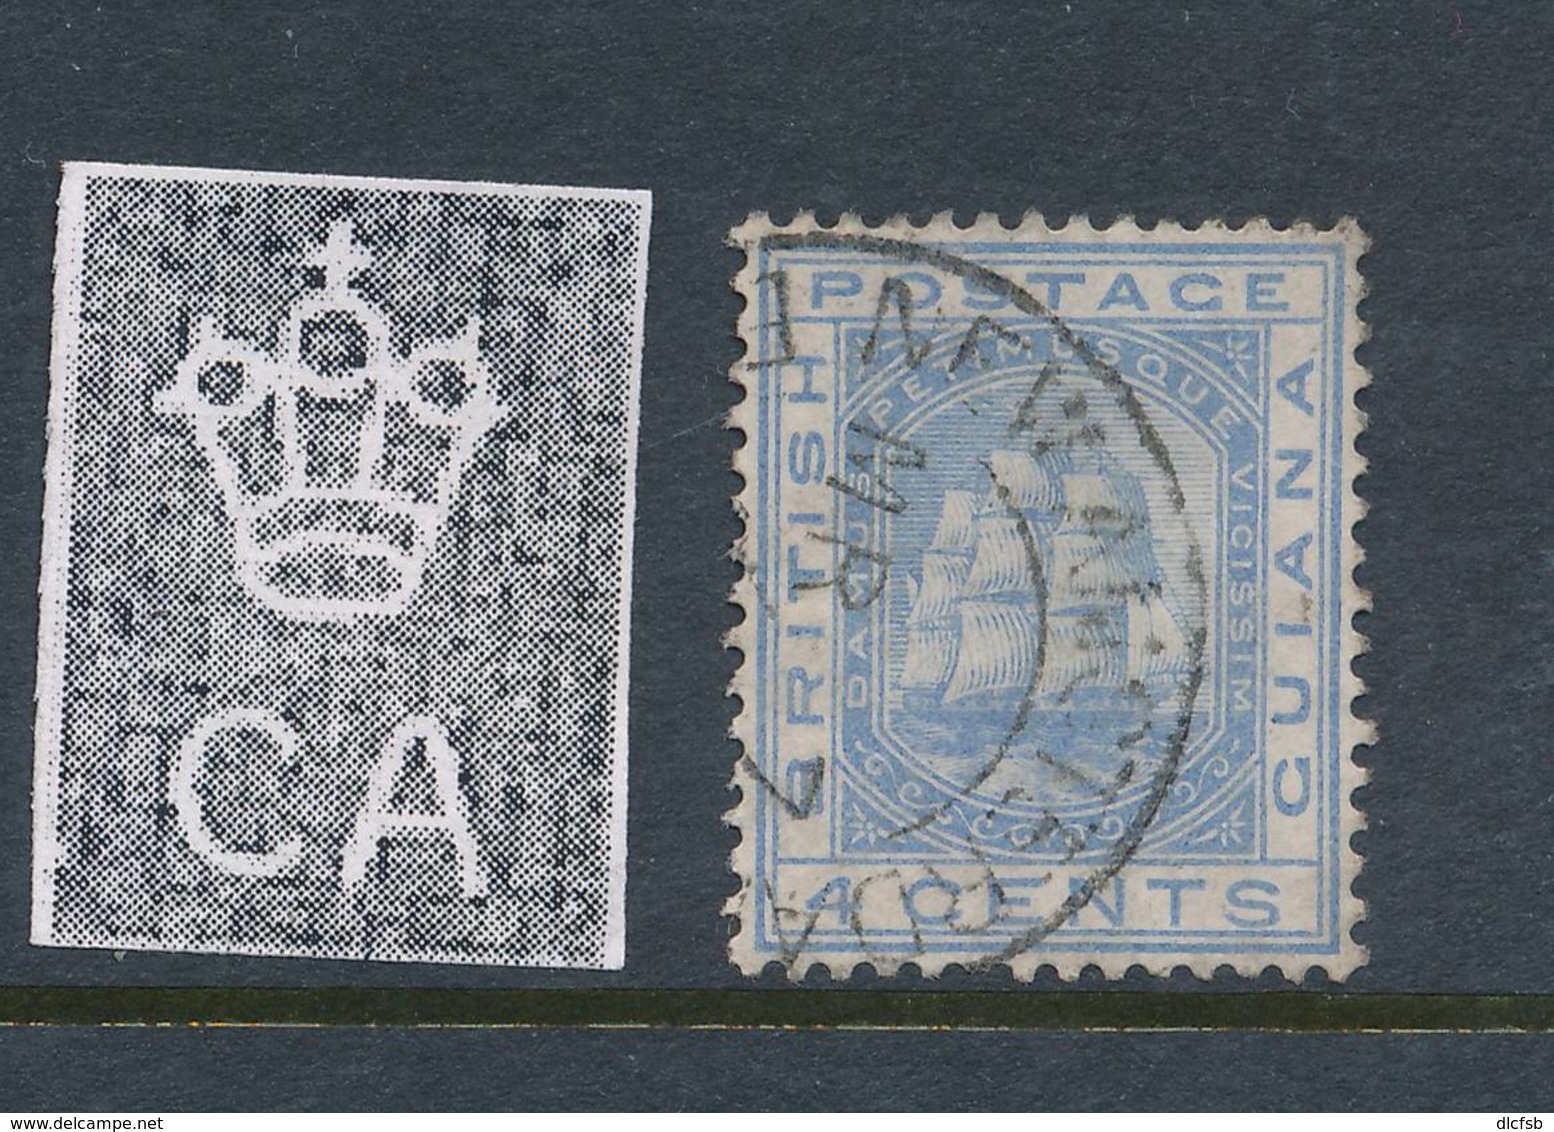 BRITISH GUIANA, 1876 4c Blue Wmk Crown  CC Fine Used, Cat £9 - British Guiana (...-1966)